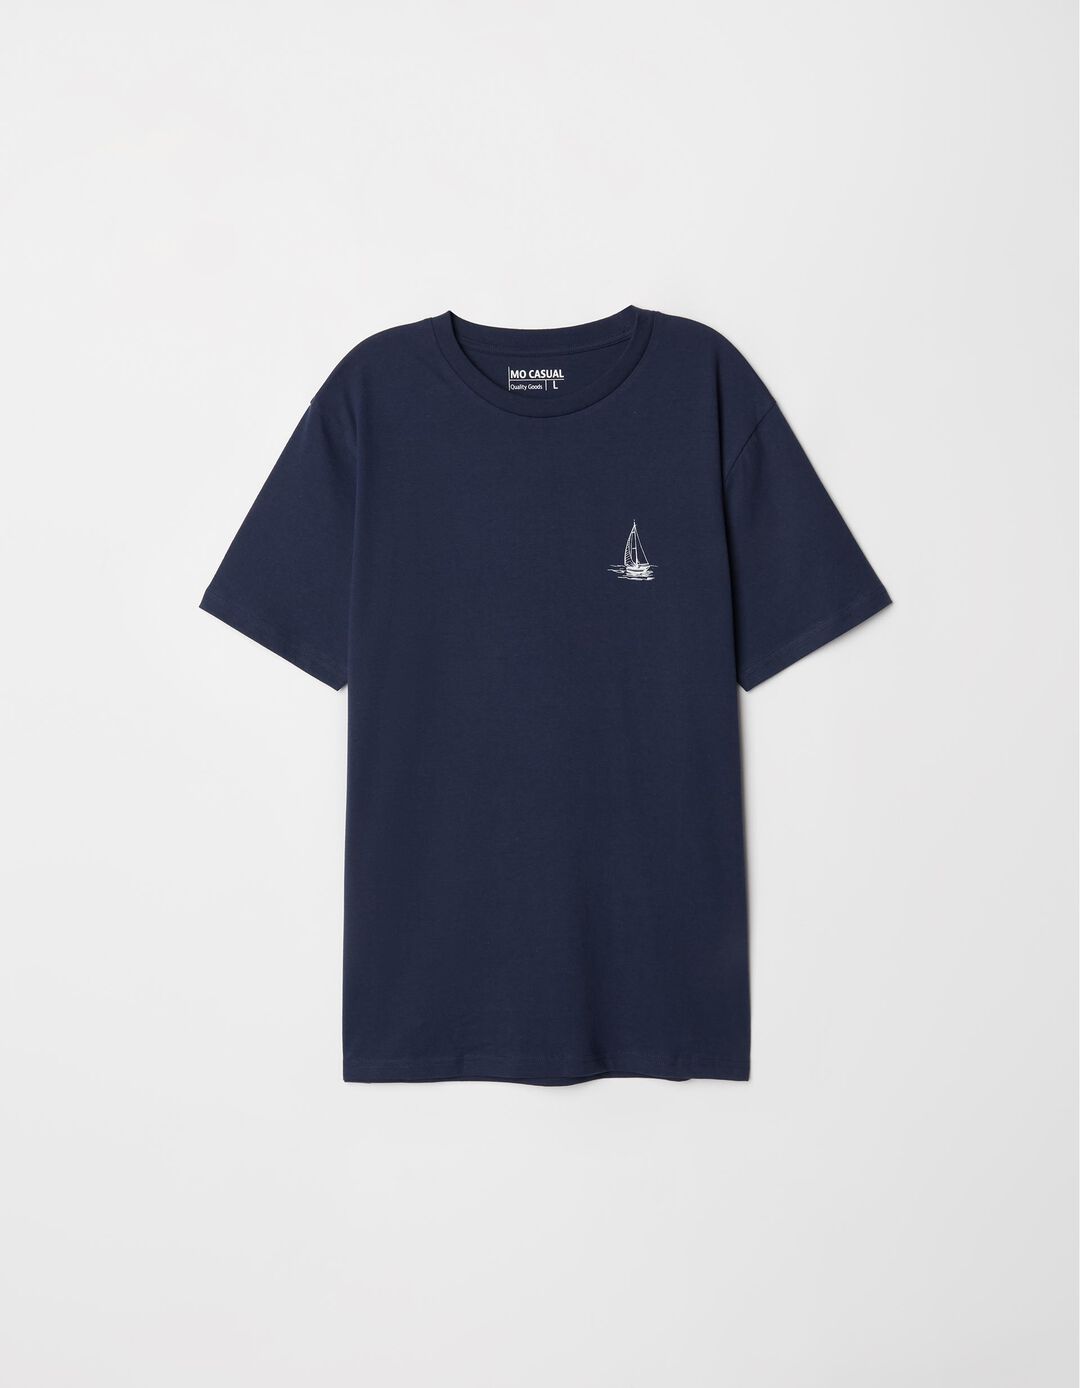 T-shirt Estampado, Homem, Azul Escuro